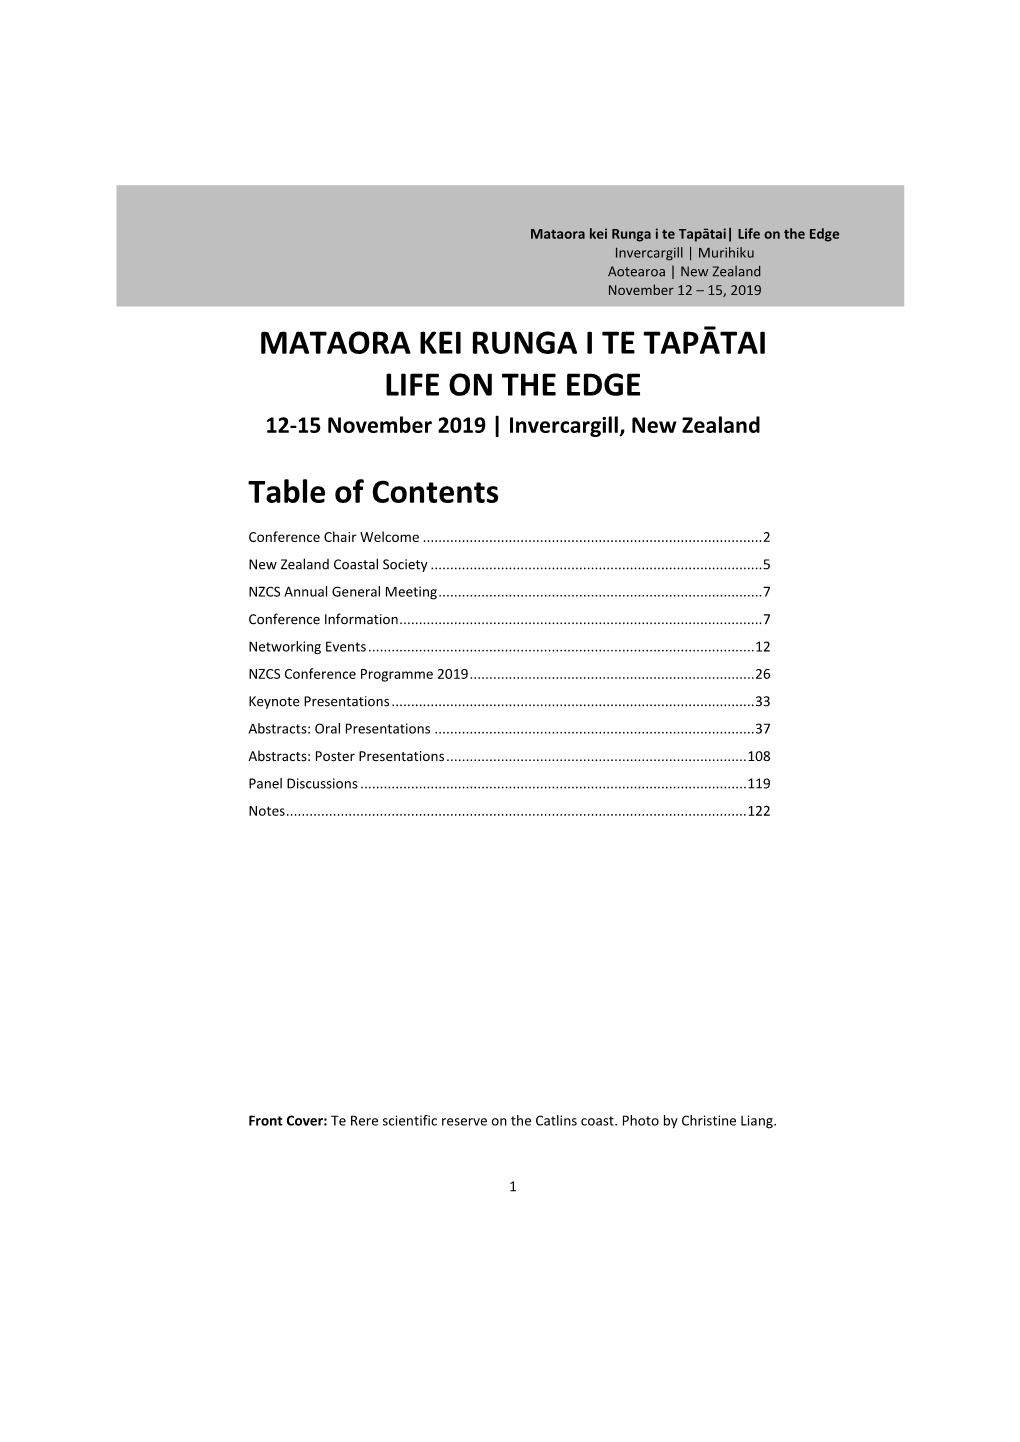 MATAORA KEI RUNGA I TE TAPĀTAI LIFE on the EDGE Table of Contents